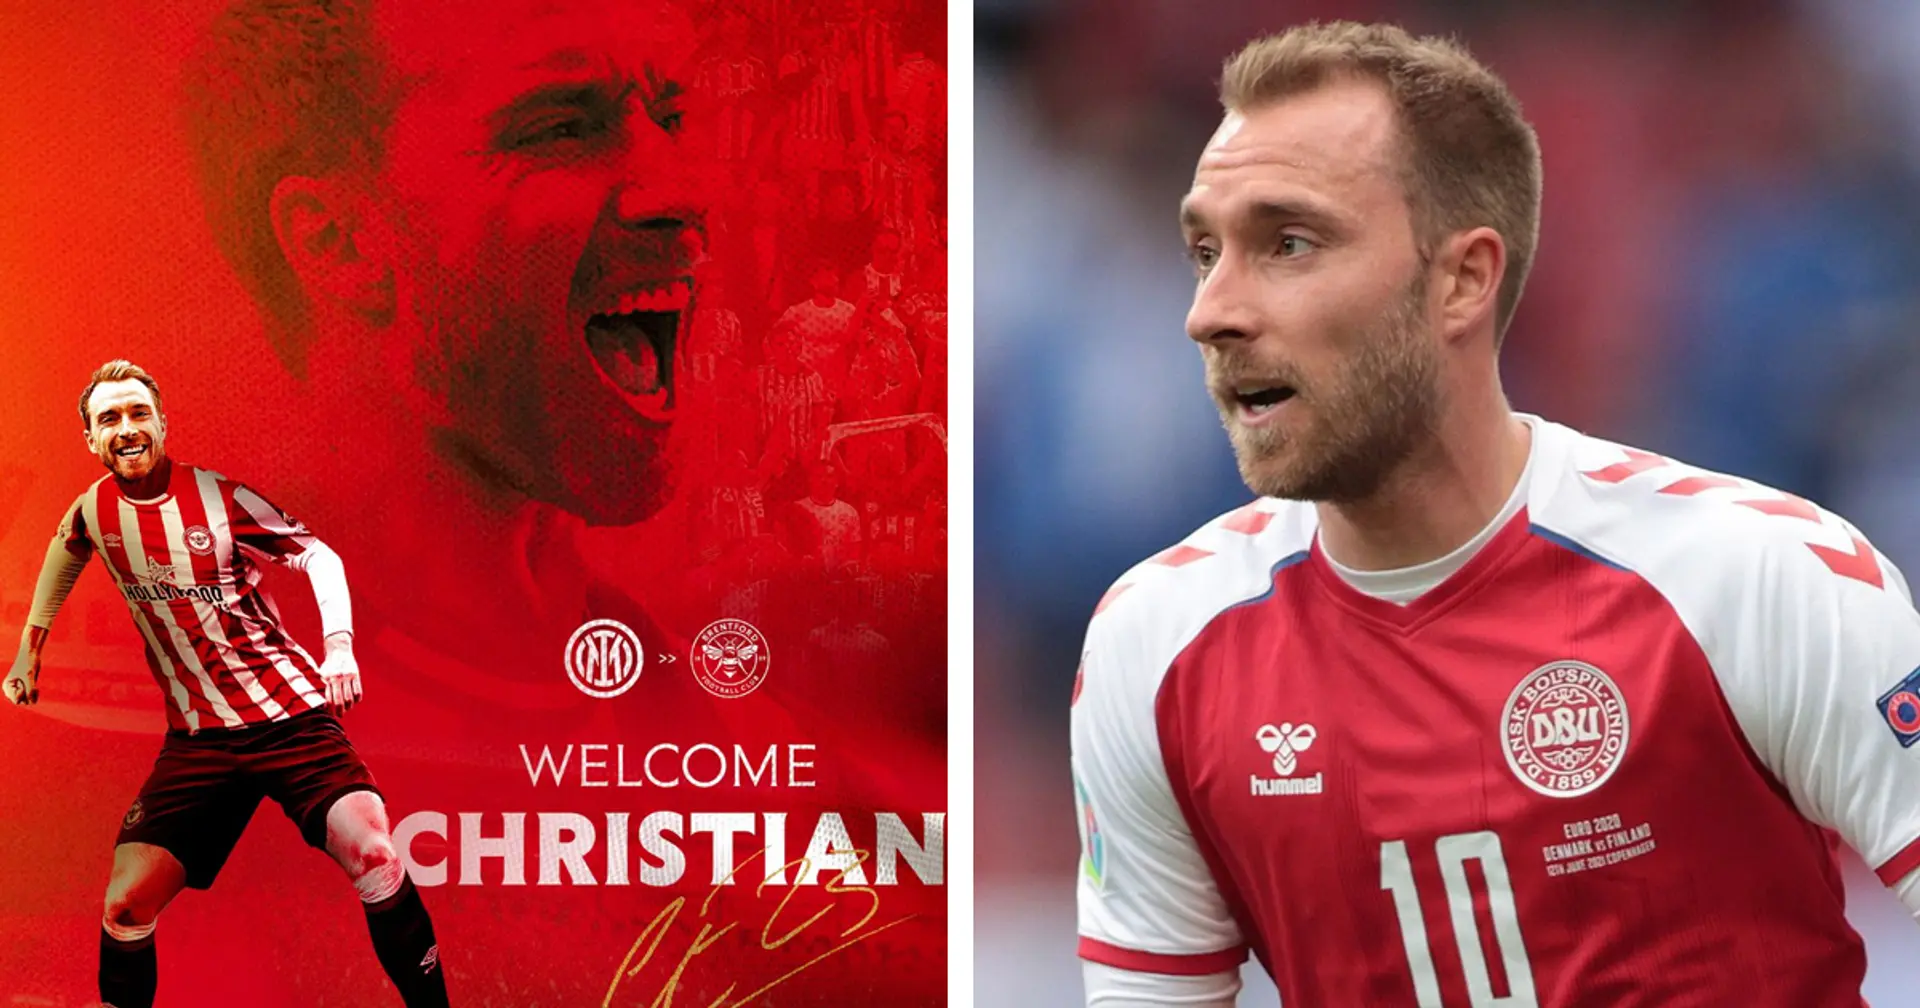 OFFIZIELL: Christian Eriksen unterschreibt Vertrag mit dem PL-Verein Brentford!